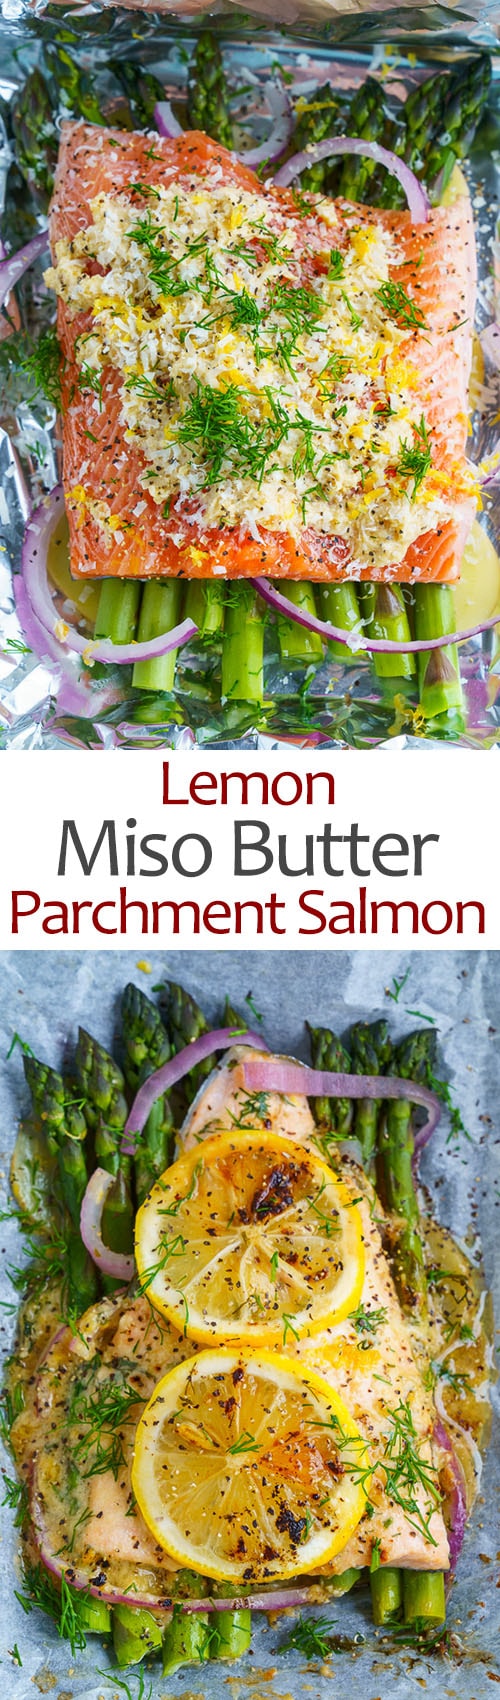 Lemon Miso Butter Parchment Salmon with Asparagus